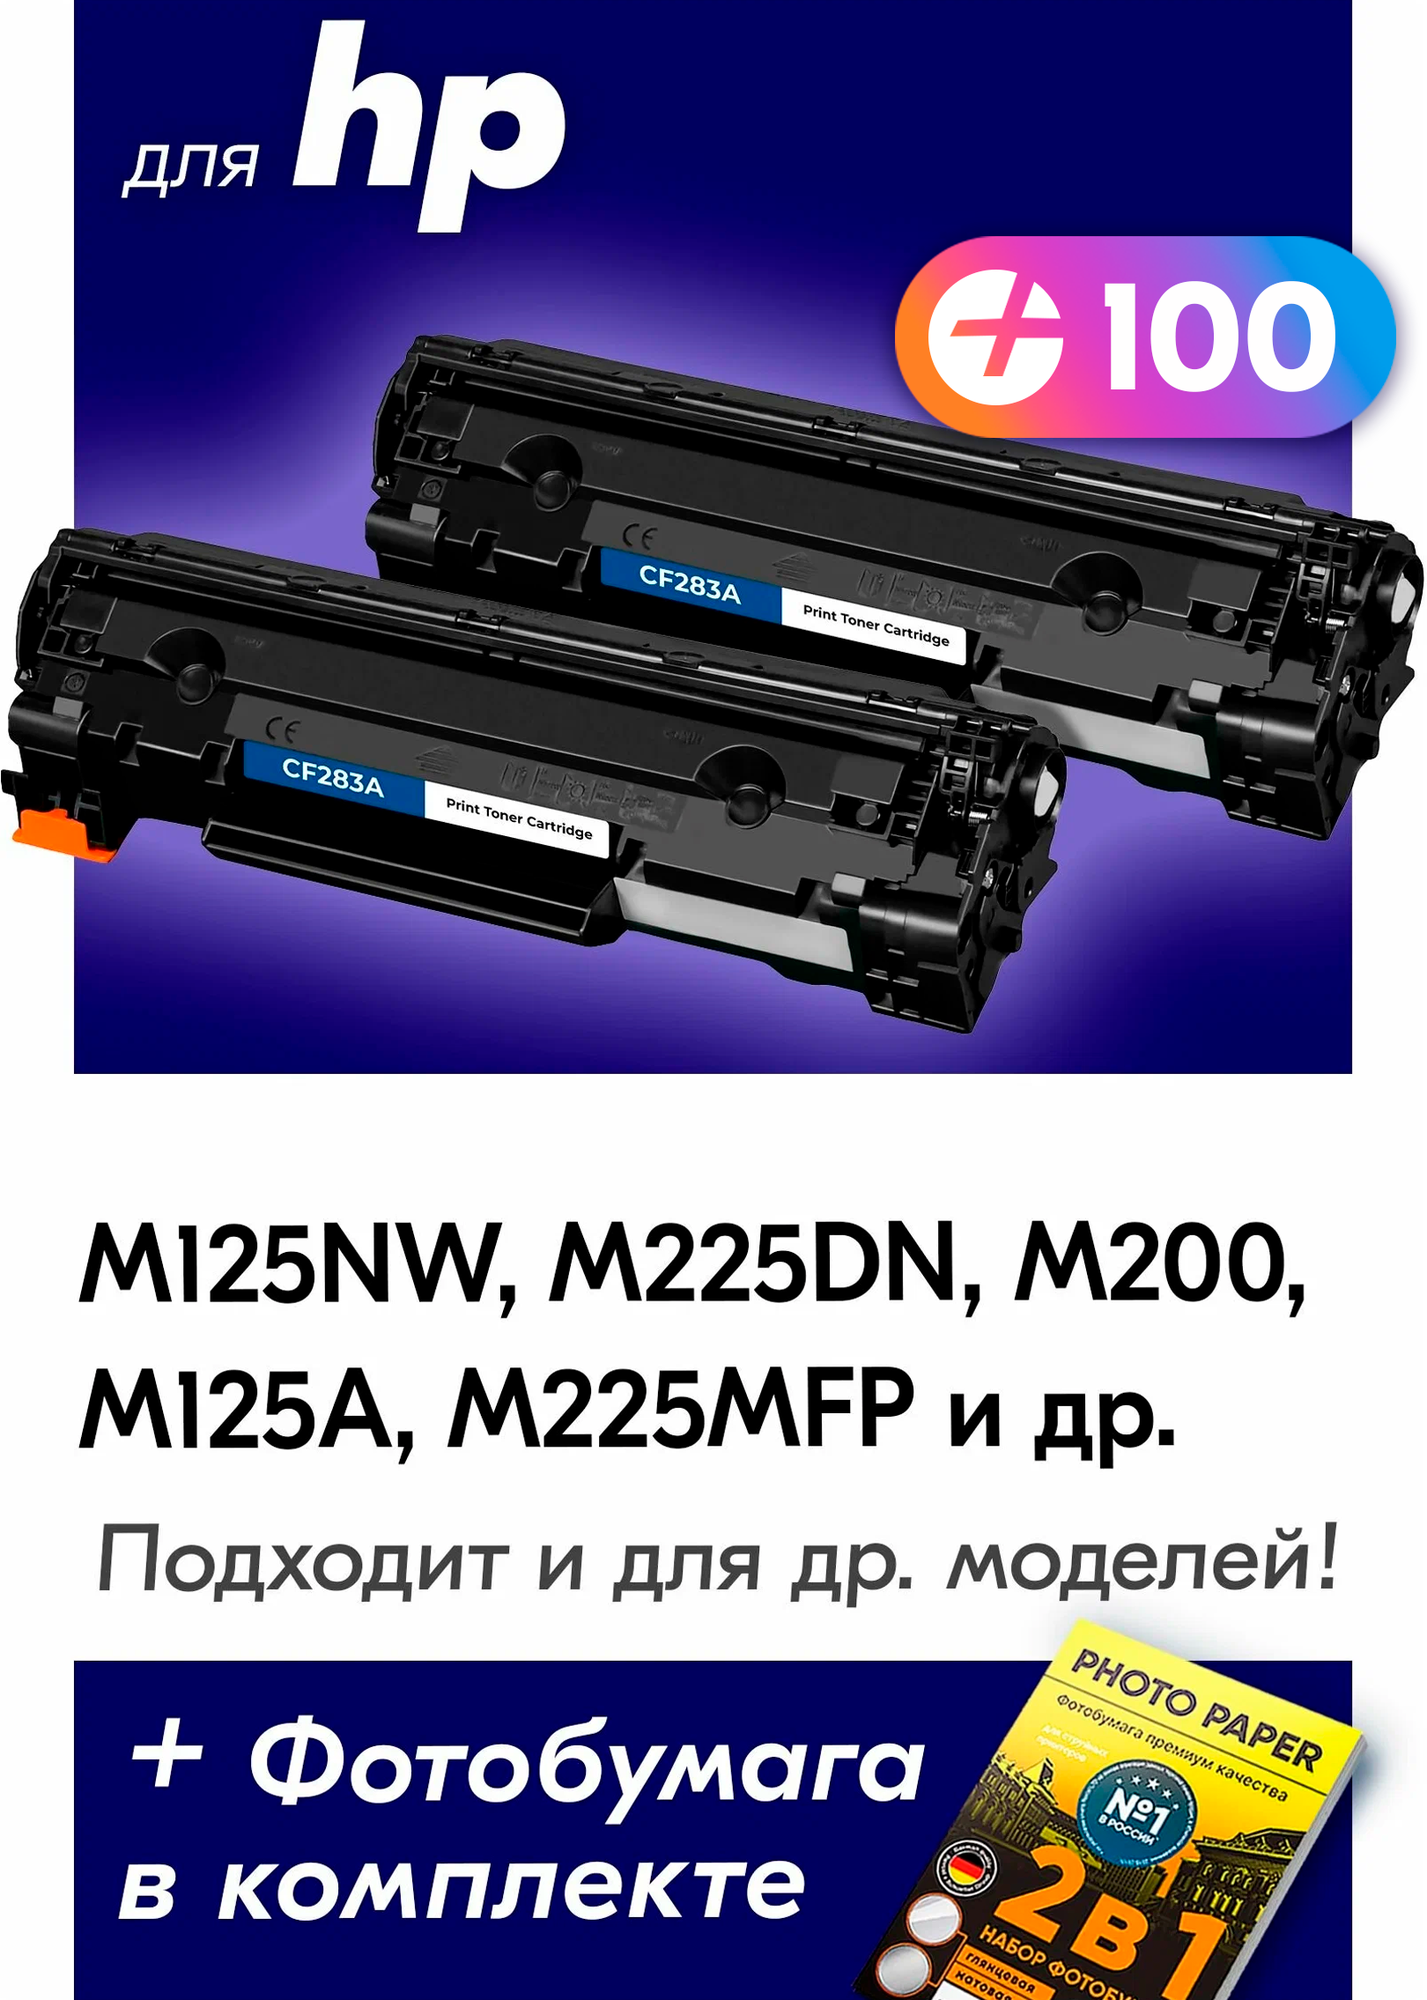 Лазерные картриджи для CF283A (№ 83A), HP LaserJet M125NW, M225DN, M200, M125A, M225MFP и др. с краской черный новый заправляемый, 3000 копий, 2 шт.